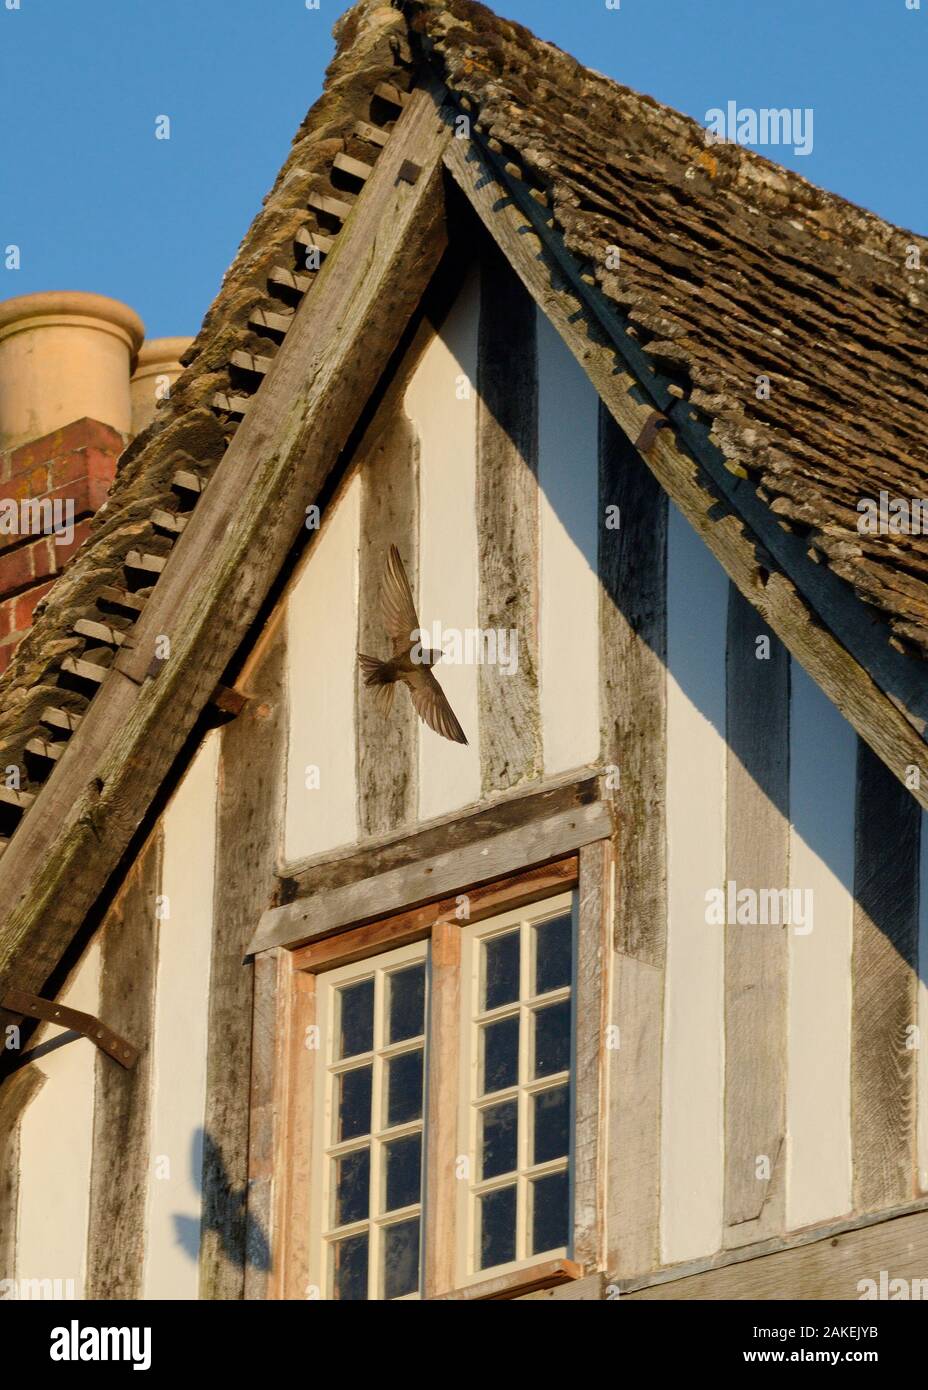 Common swift (Apus apus) de volar de regreso a su nido bajo el techo de una antigua casa de entramado de madera con varios nidos en virtud de SWIFT, Lacock, Wiltshire, Reino Unido, junio. Foto de stock